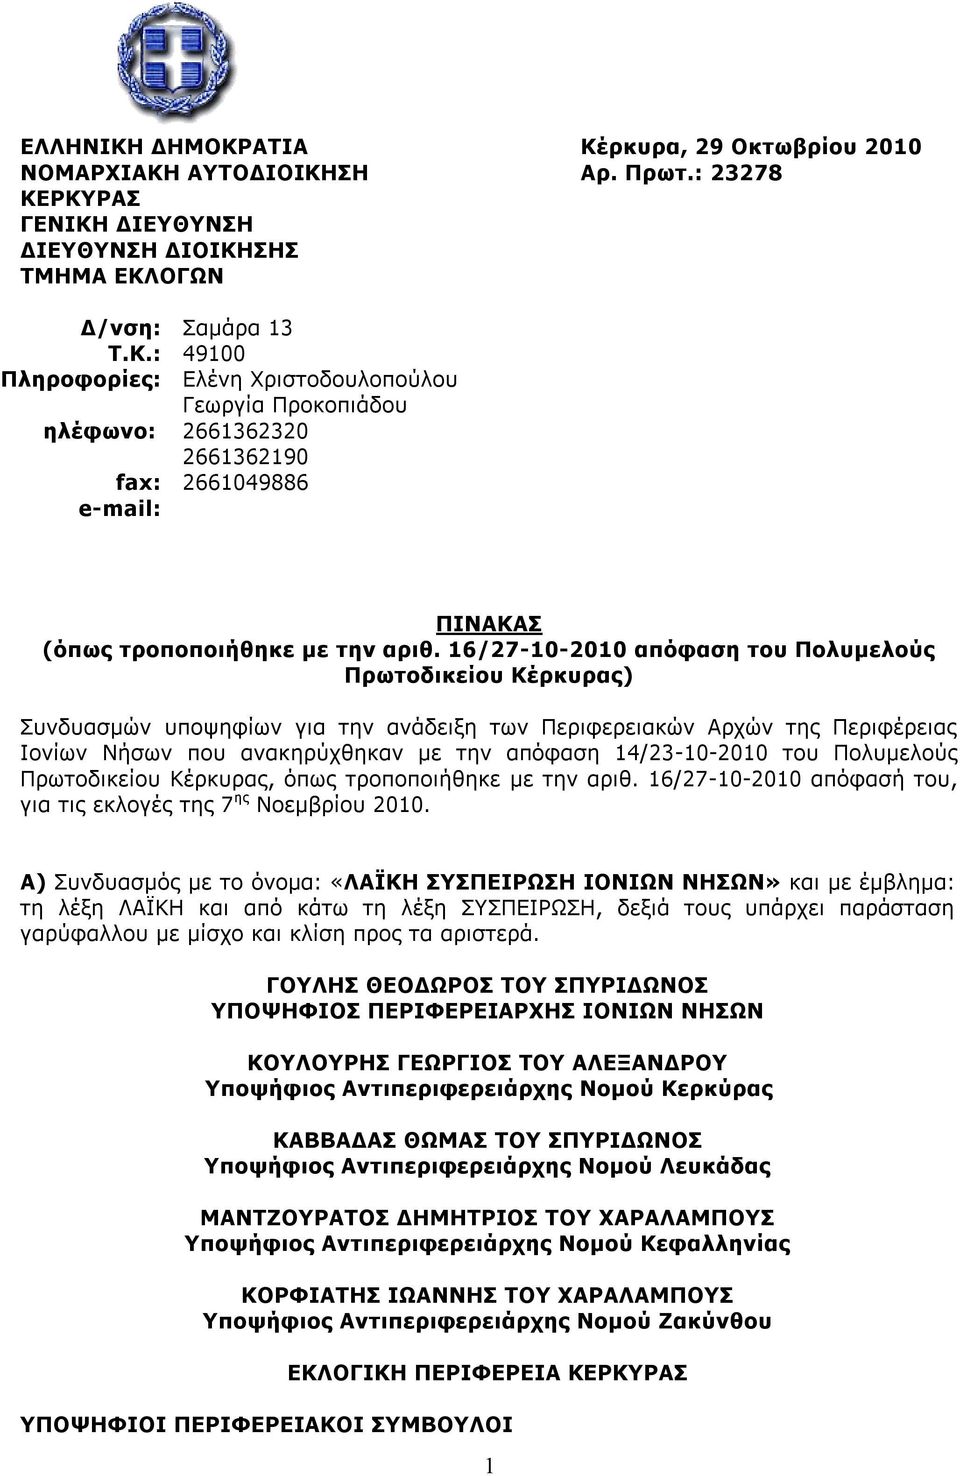 του Πολυμελούς Πρωτοδικείου Κέρκυρας, όπως τροποποιήθηκε με την αριθ. 16/27-10-2010 απόφασή του, για τις εκλογές της 7 ης Νοεμβρίου 2010.